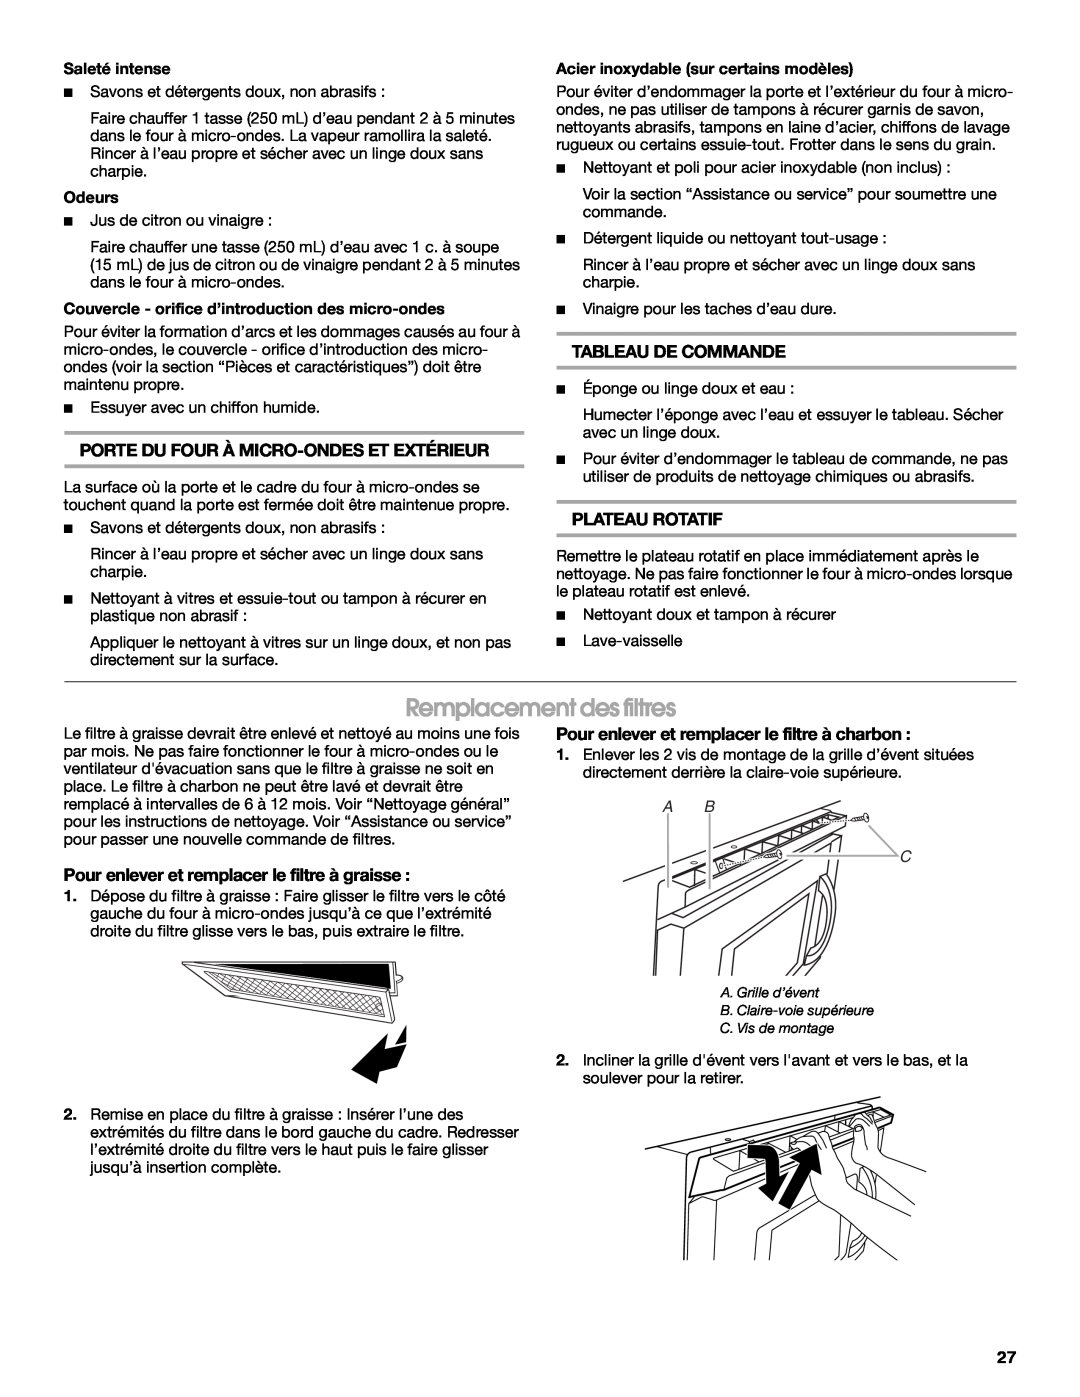 IKEA IMH15 Remplacement des filtres, Porte Du Four À Micro-Ondeset Extérieur, Tableau De Commande, Plateau Rotatif, A B C 